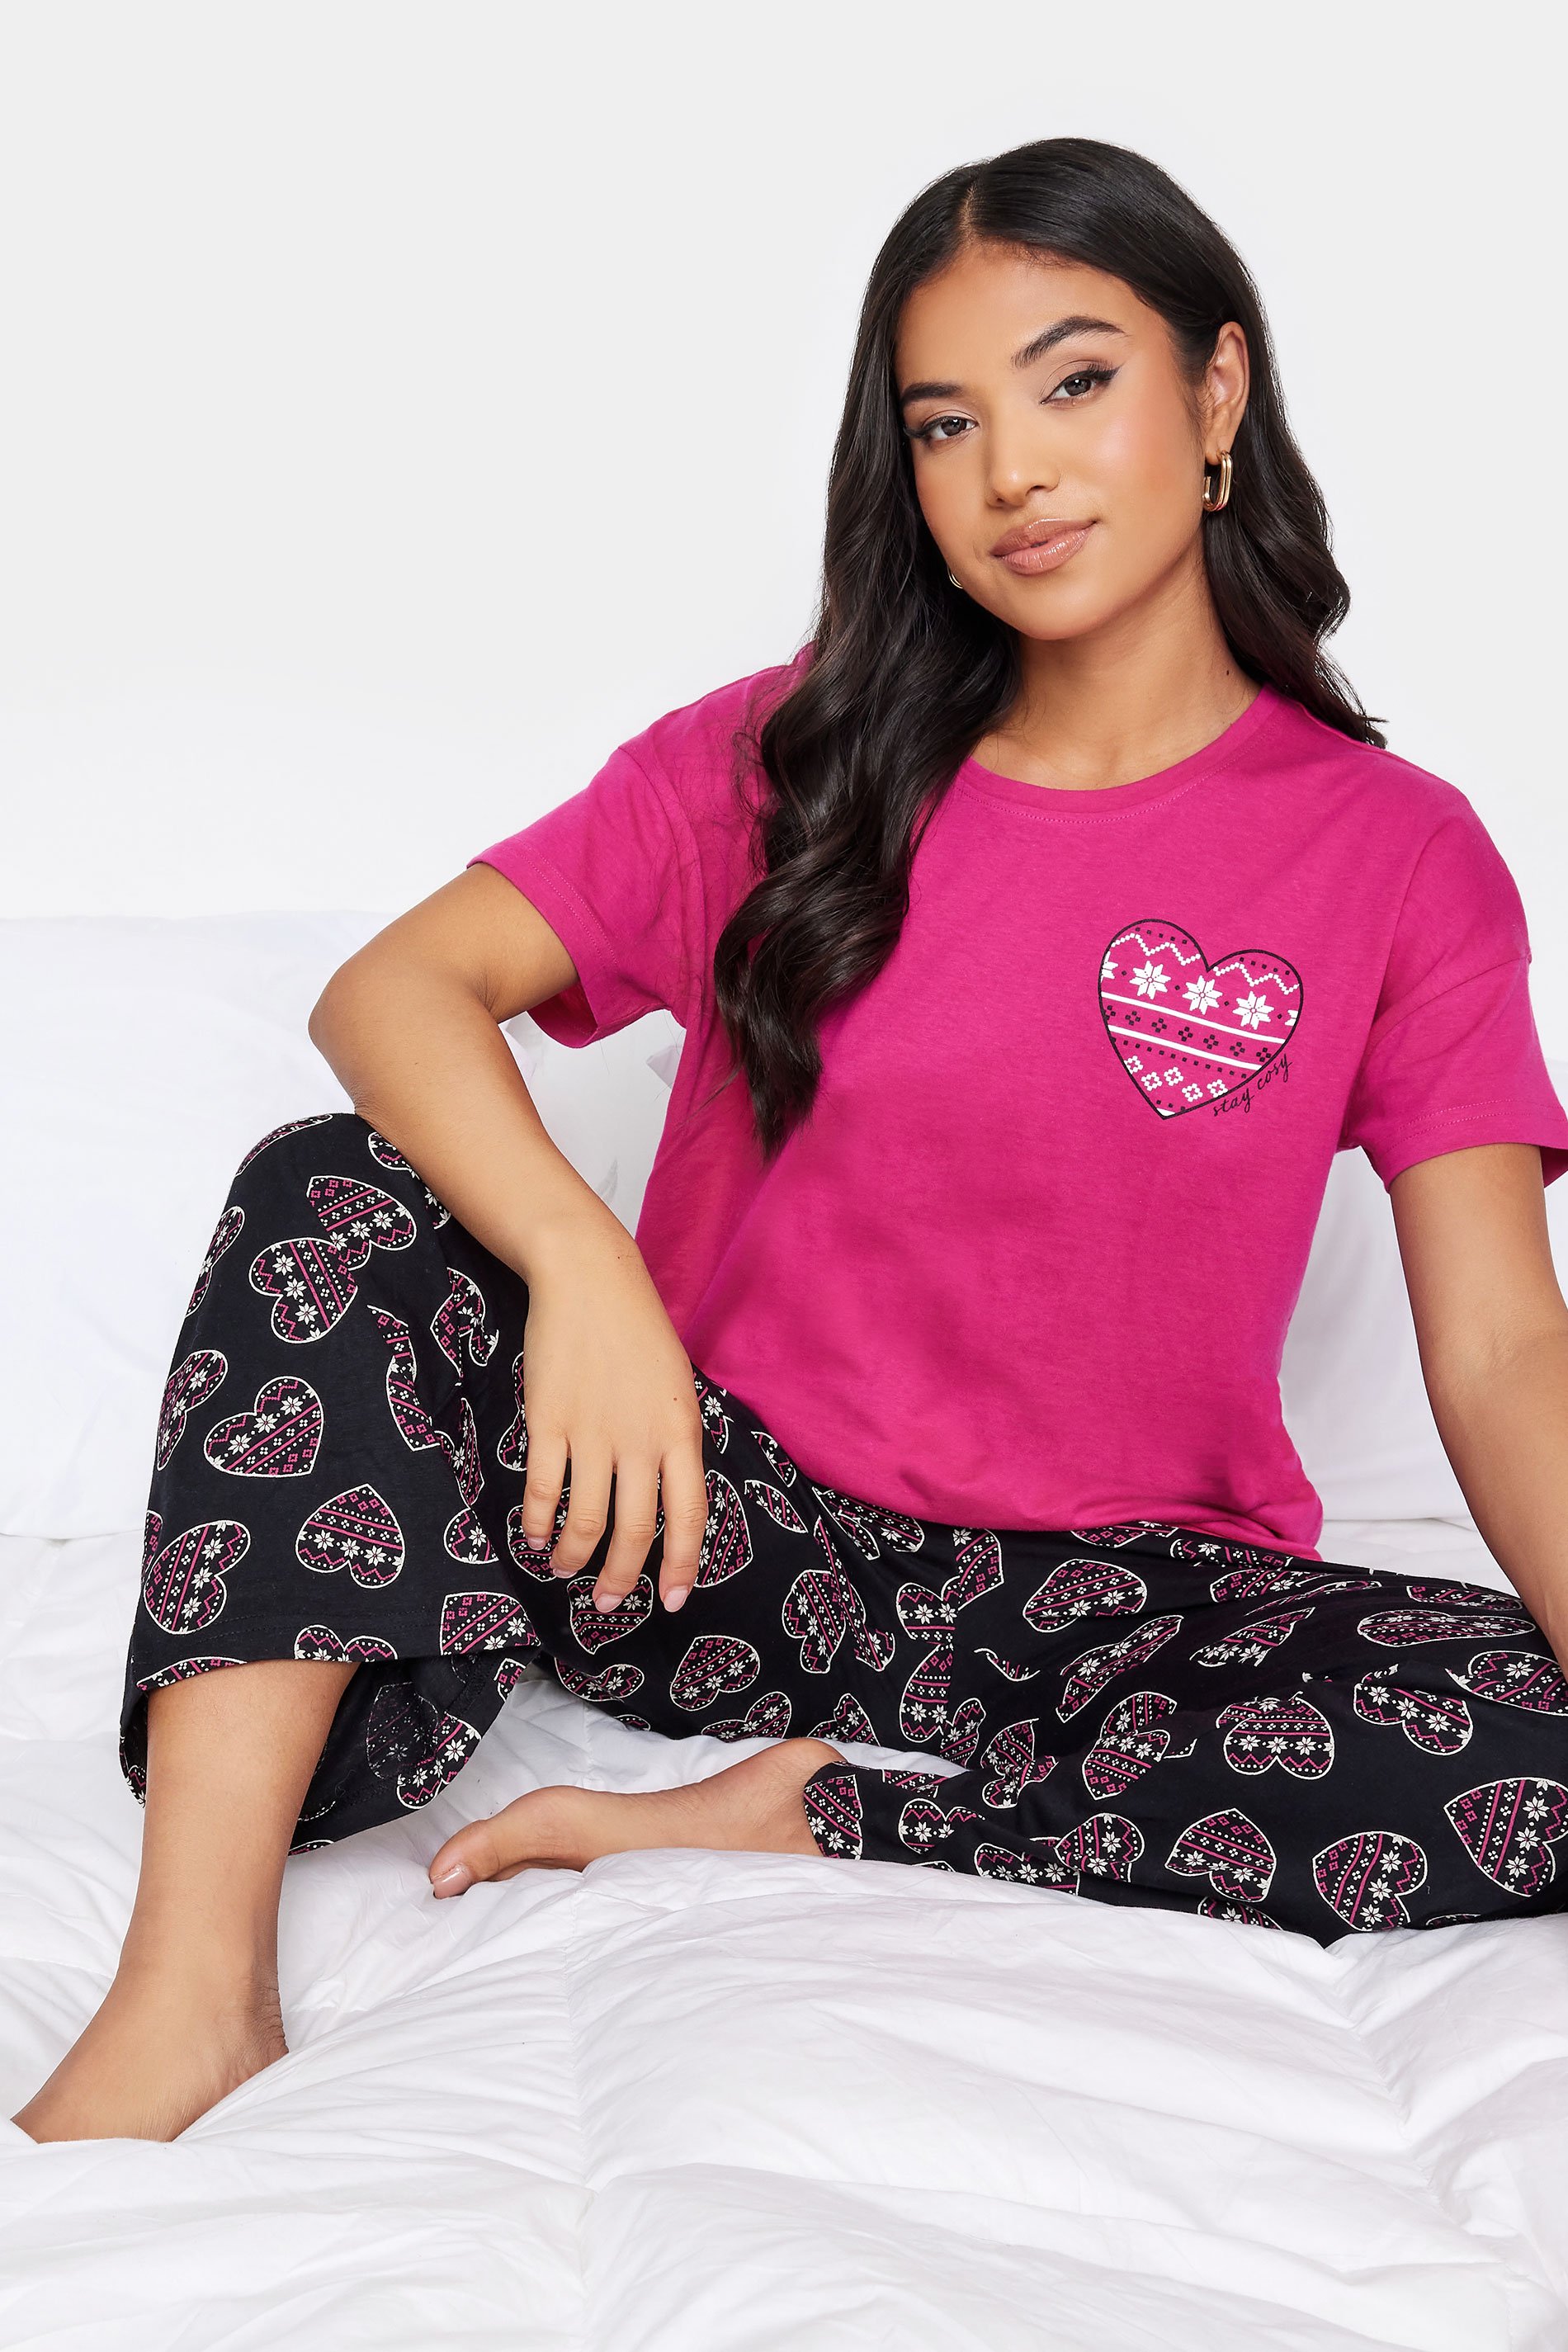 PixieGirl Petite Hot Pink & Black Fairisle Heart Print Pyjama Set | PixieGirl  1